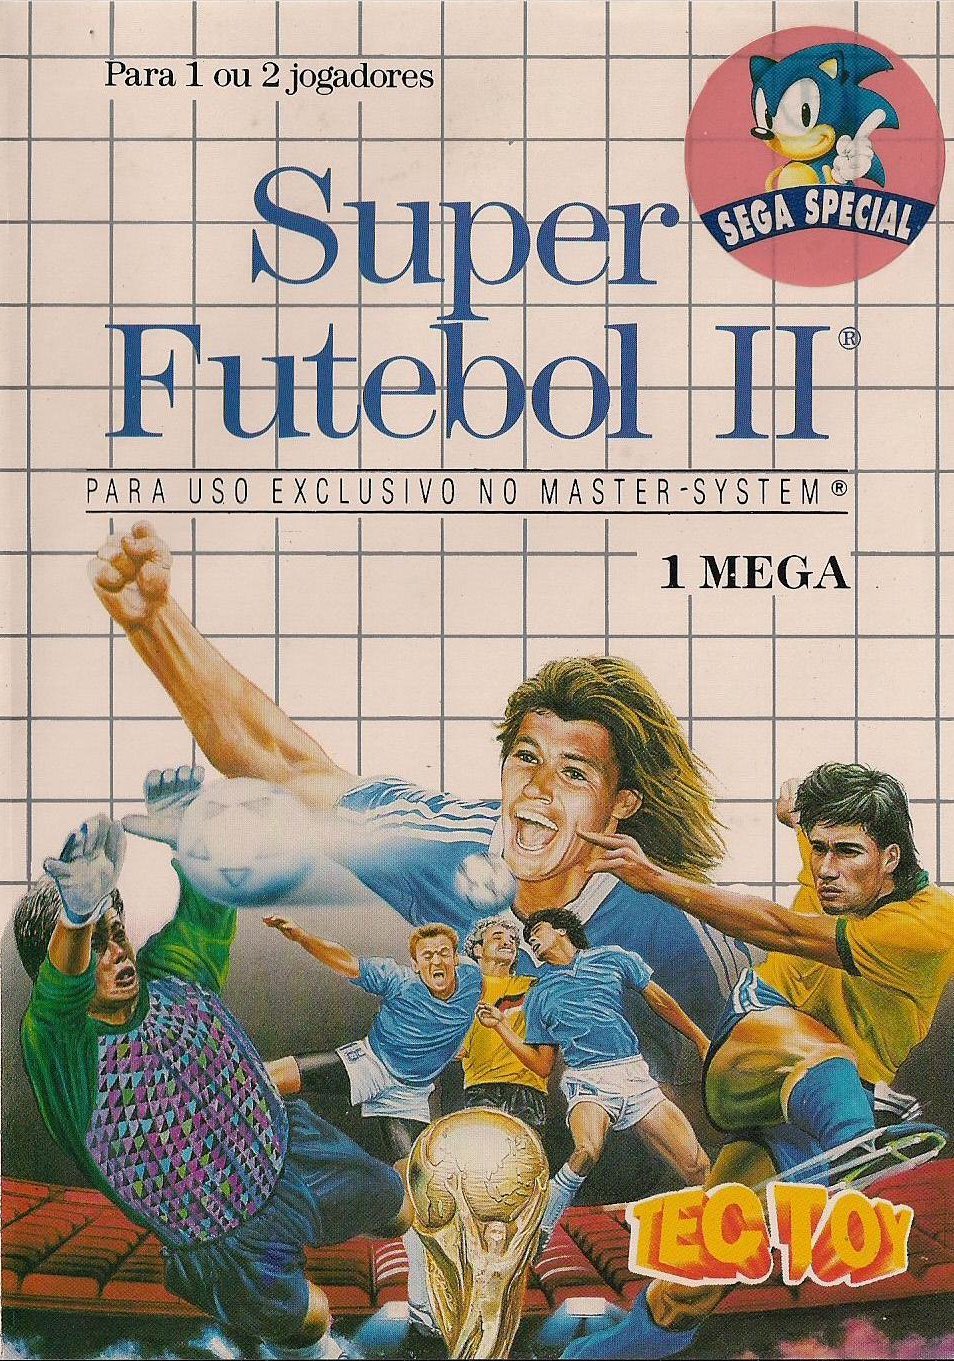 Capa do jogo Super Futebol II